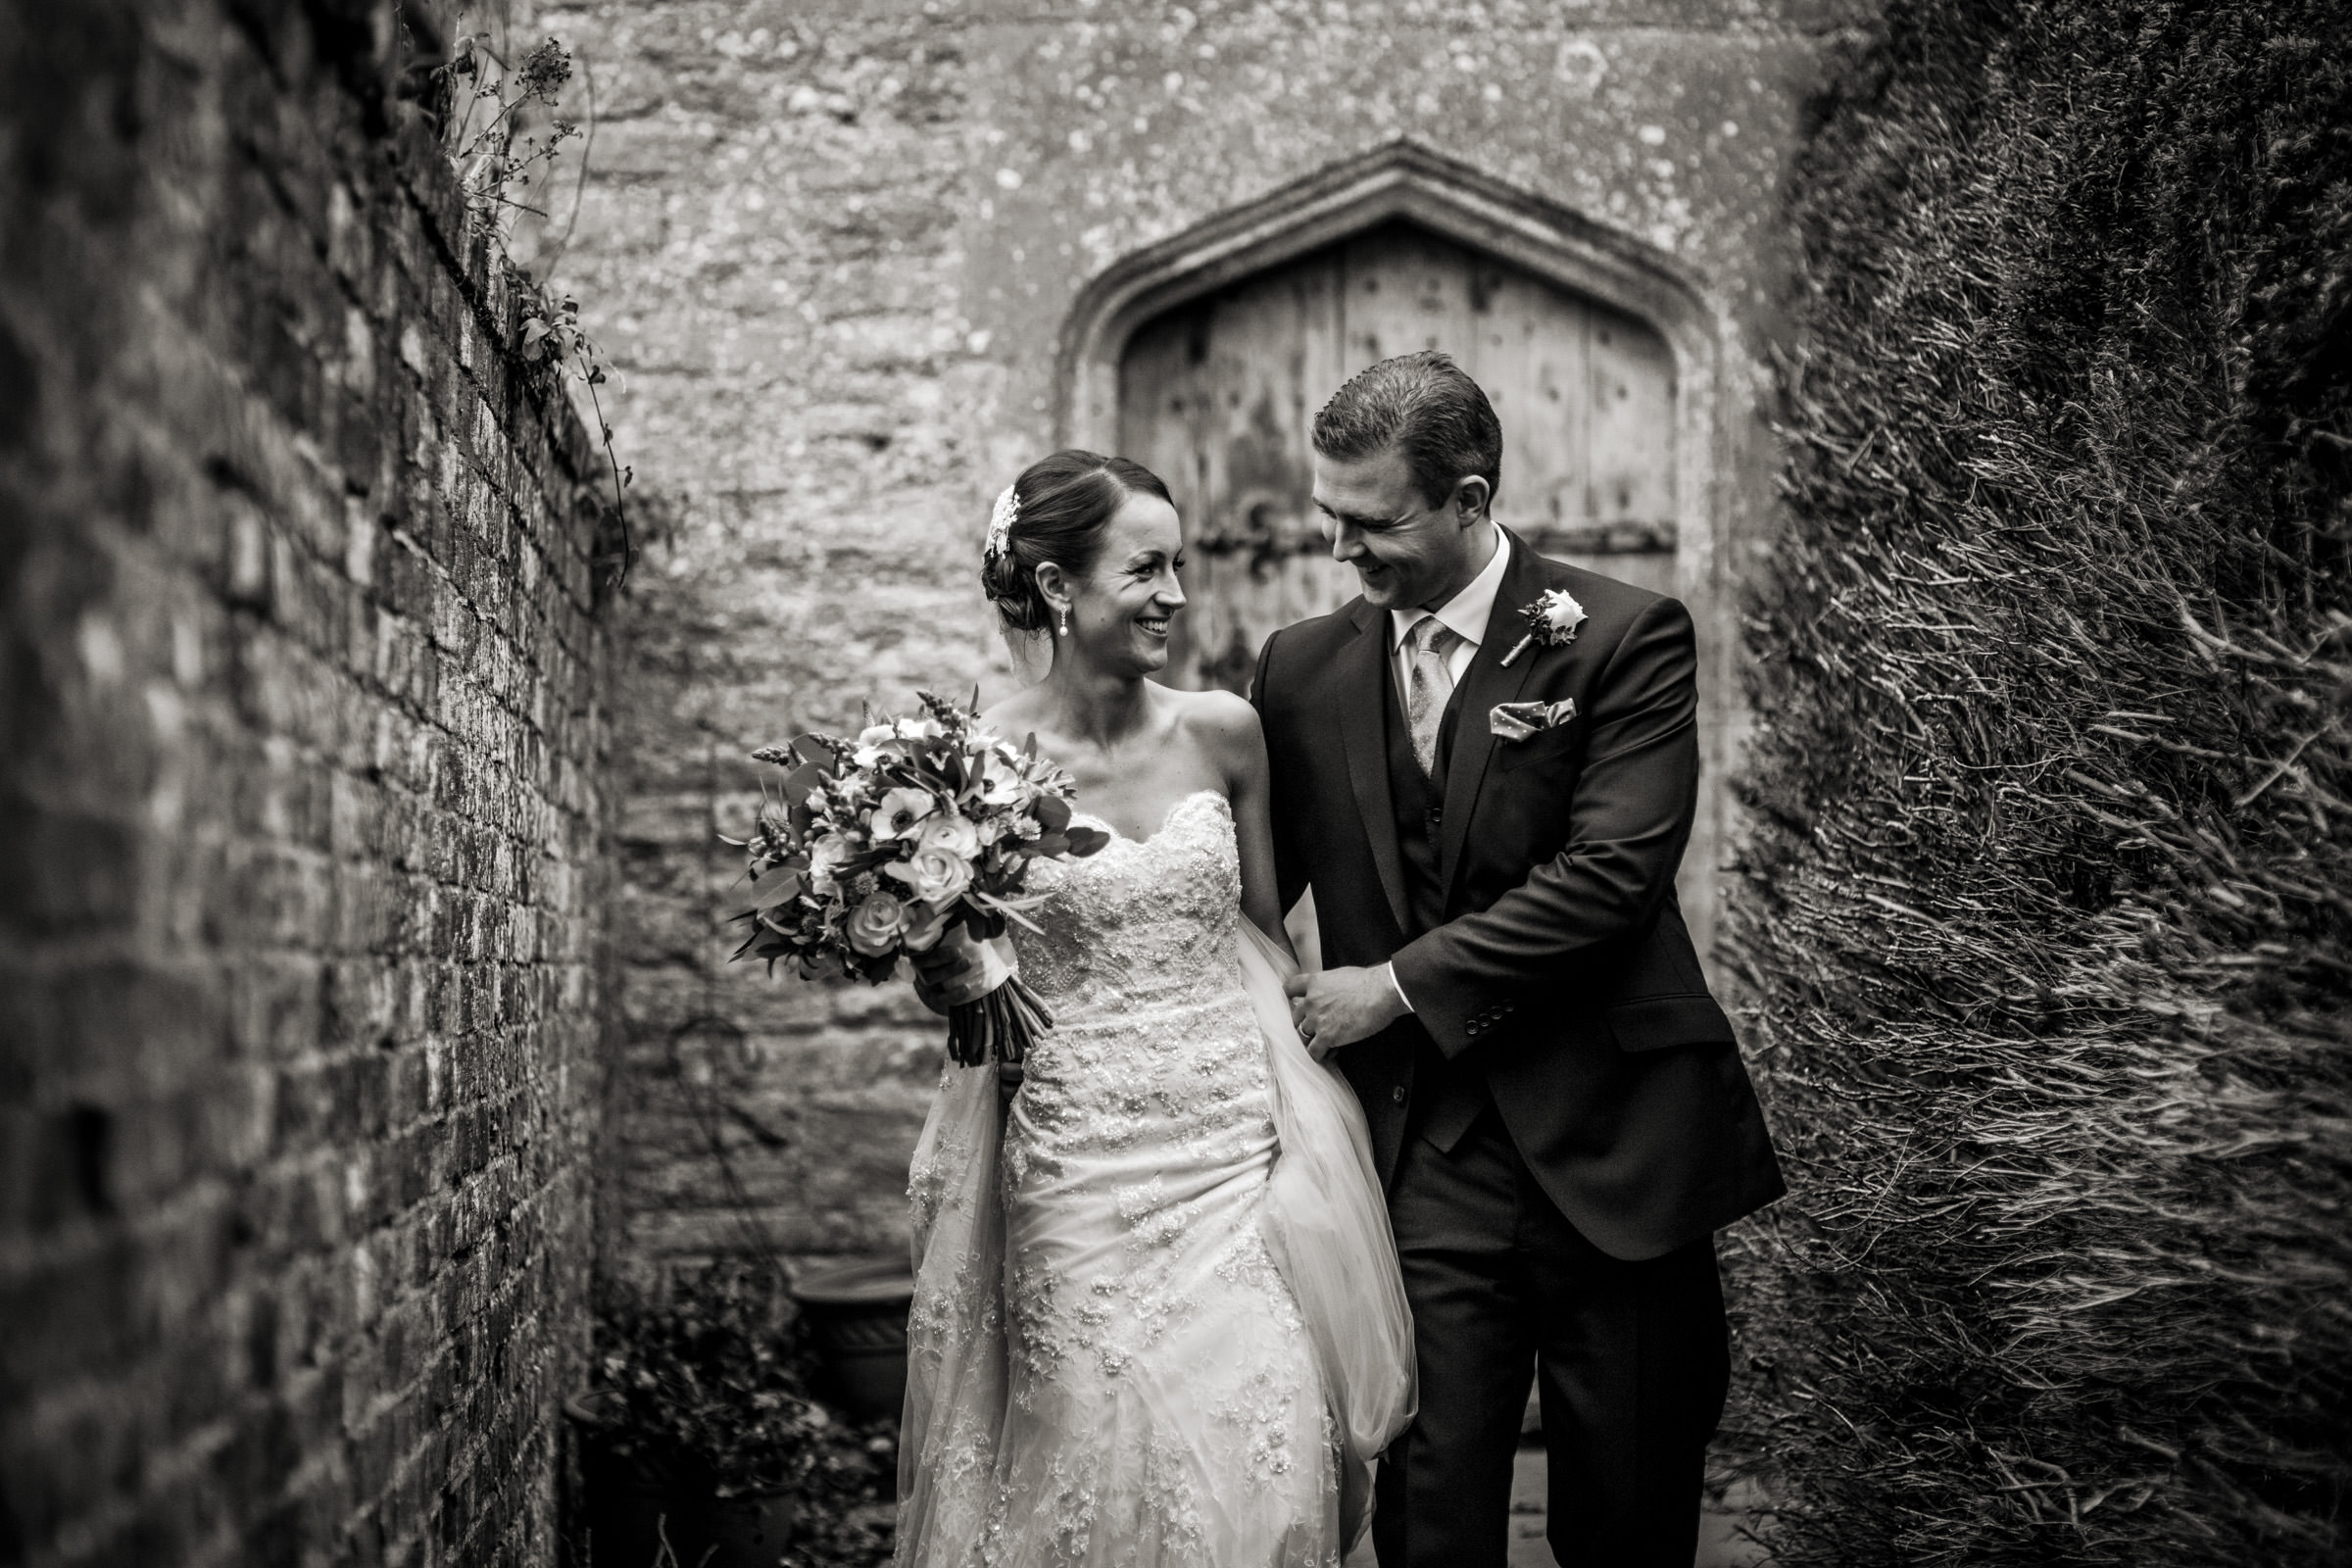 Wedding Photos At Brympton House In Somerset 021.jpg